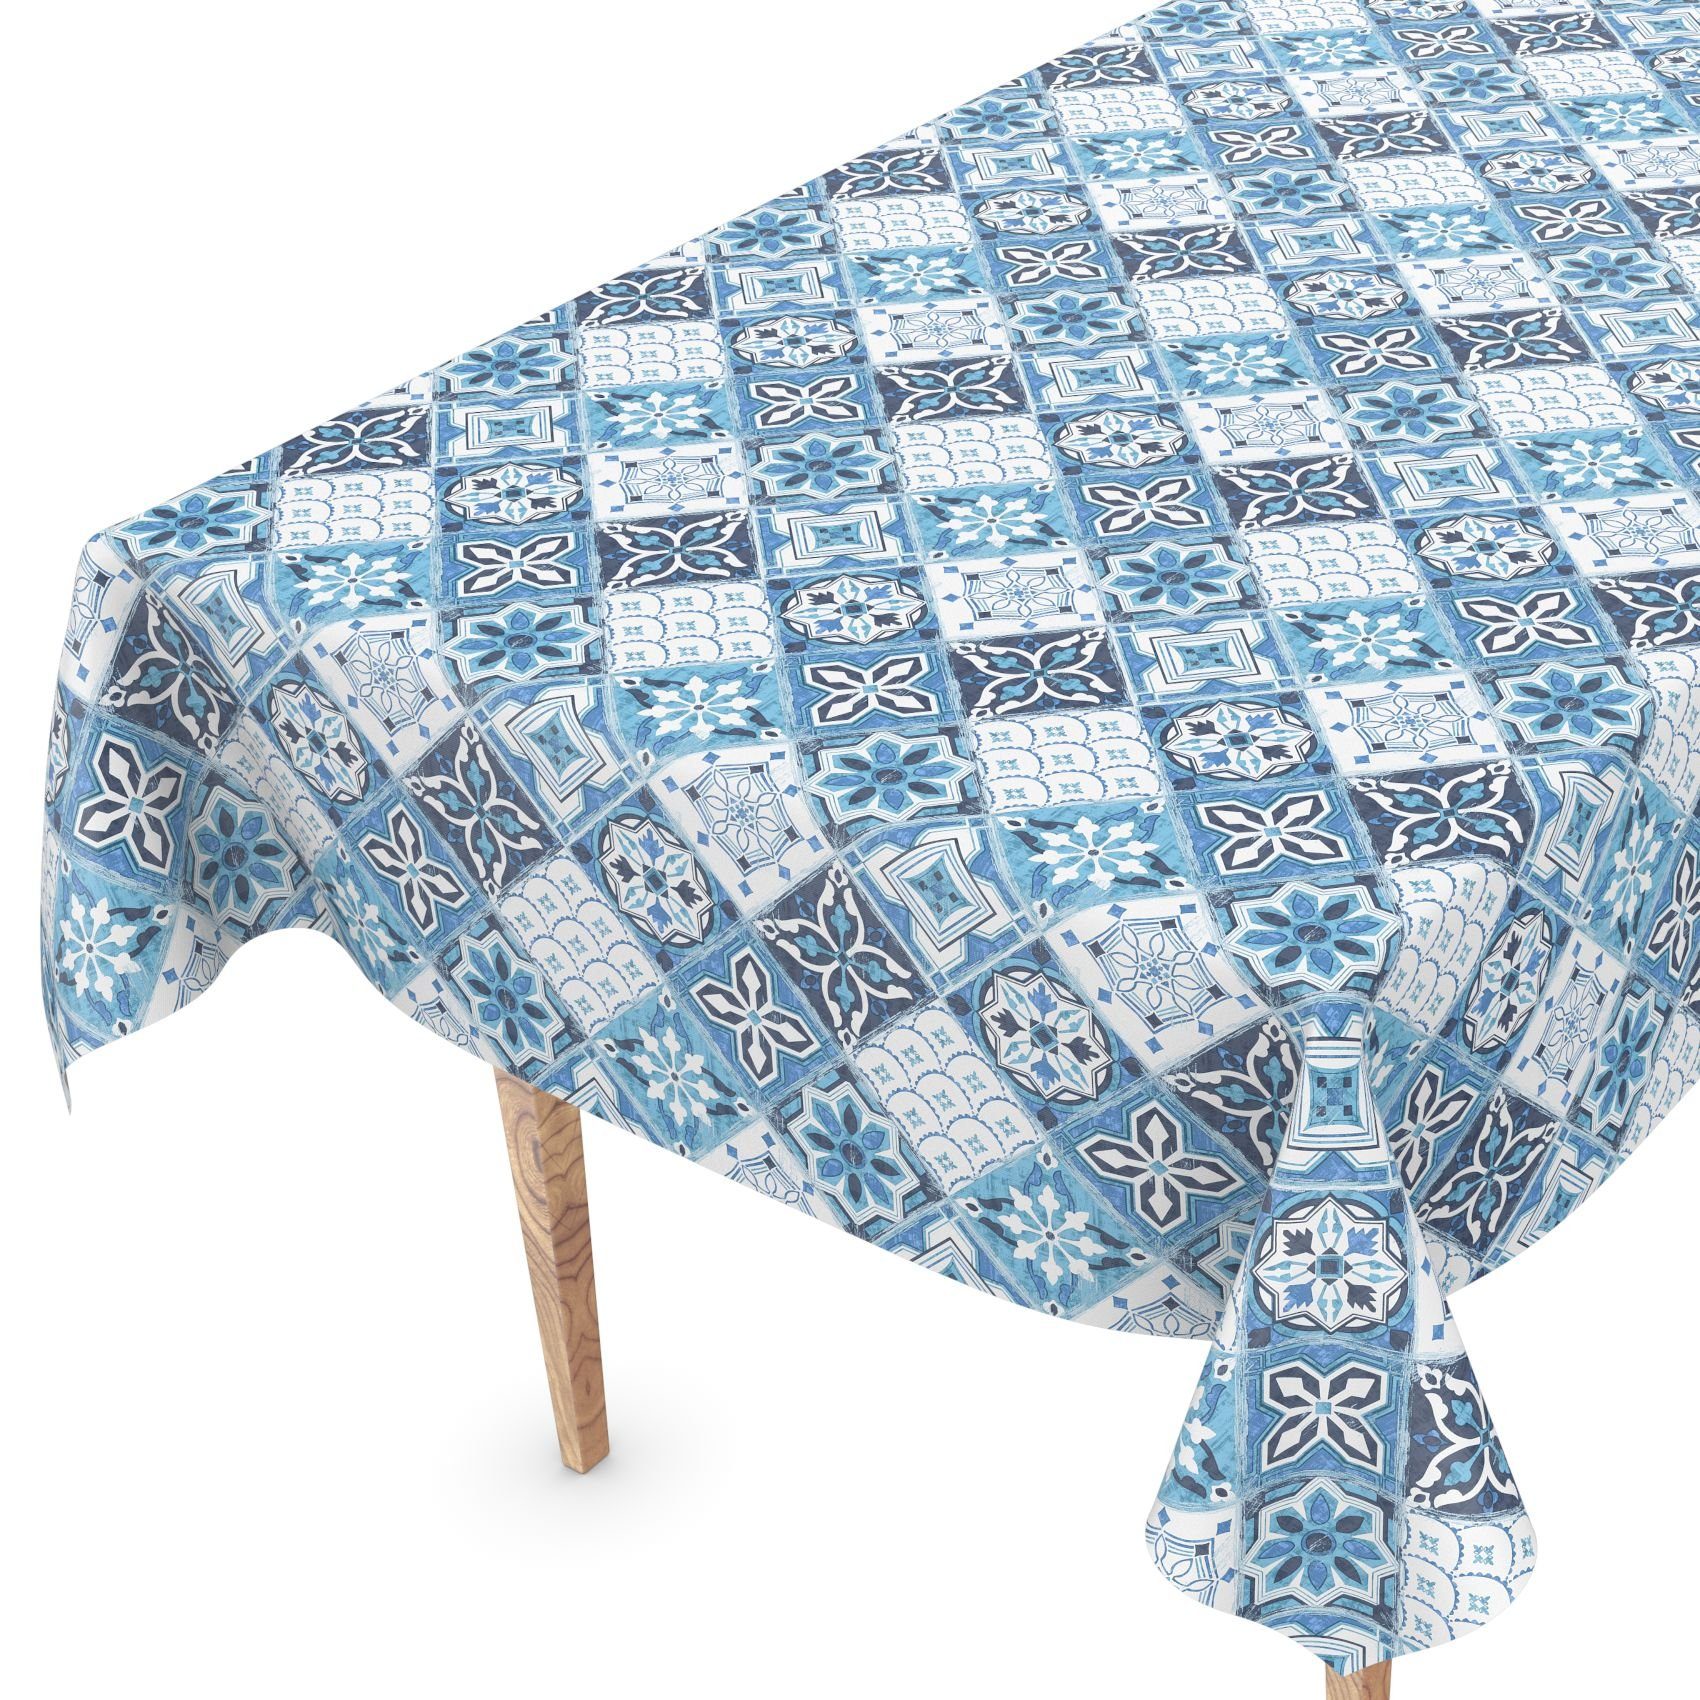 ANRO Tischdecke Wachstuch Breite 140 cm, Retro Geprägt Robust Wasserabweisend Blau Tischdecke